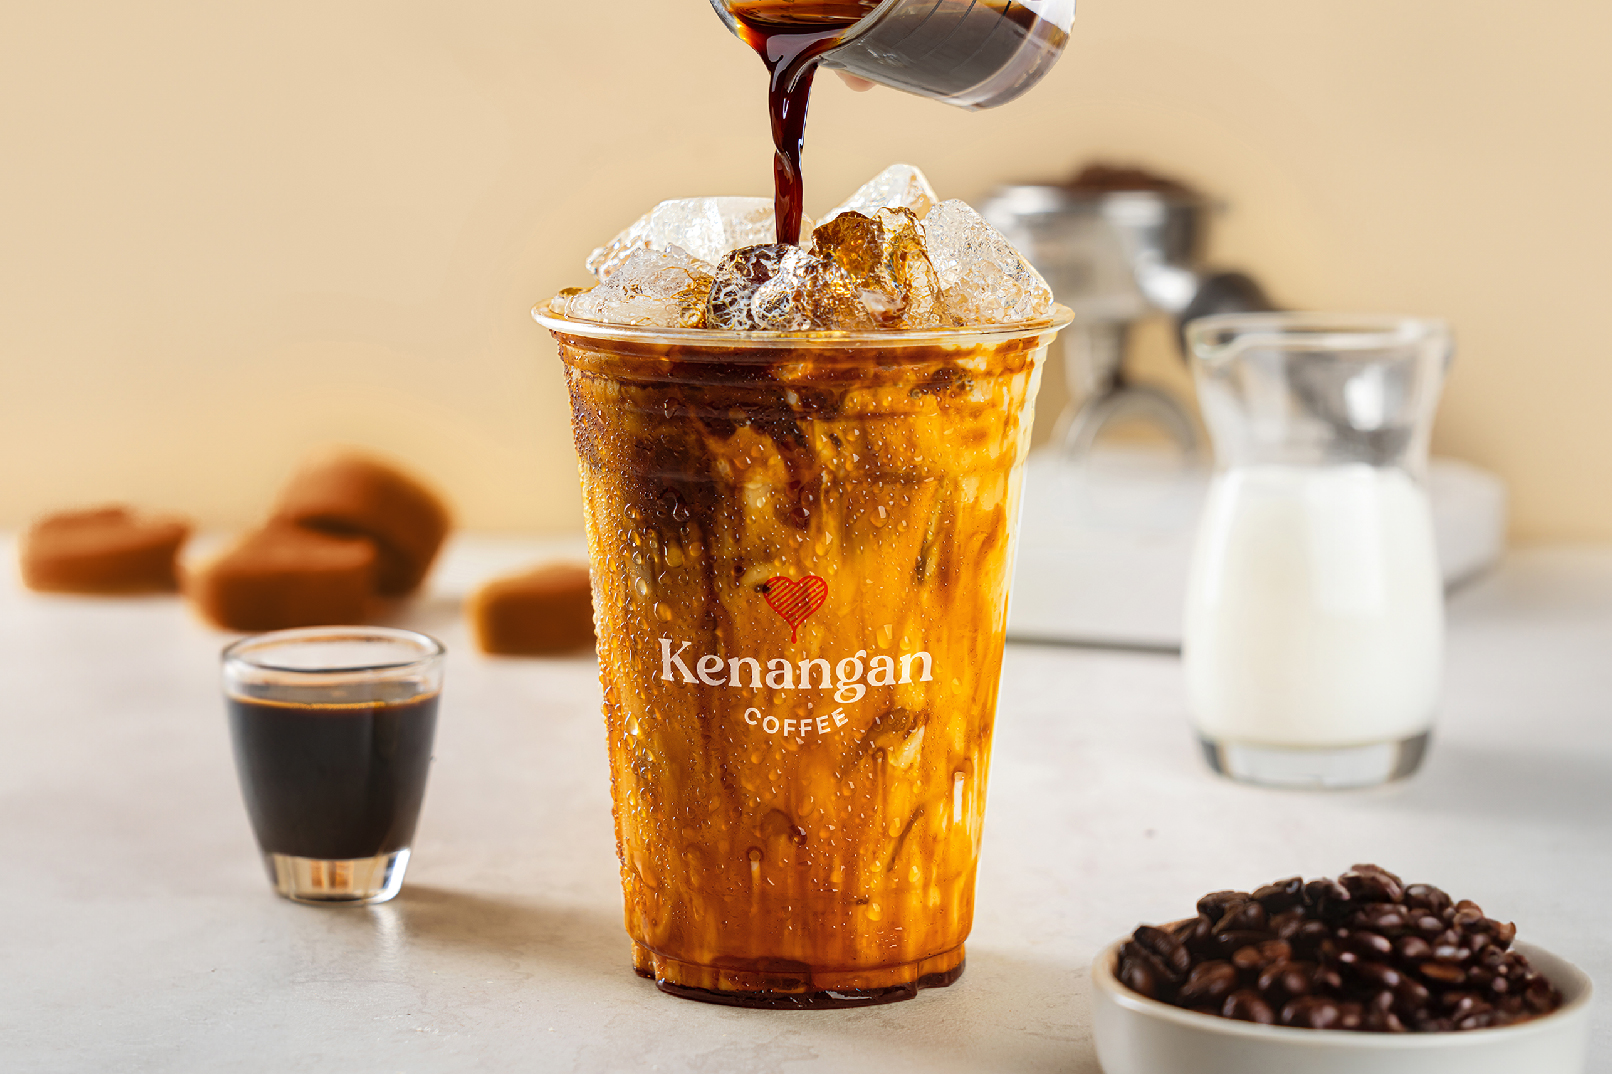 Kenangan Coffee in Malaysia